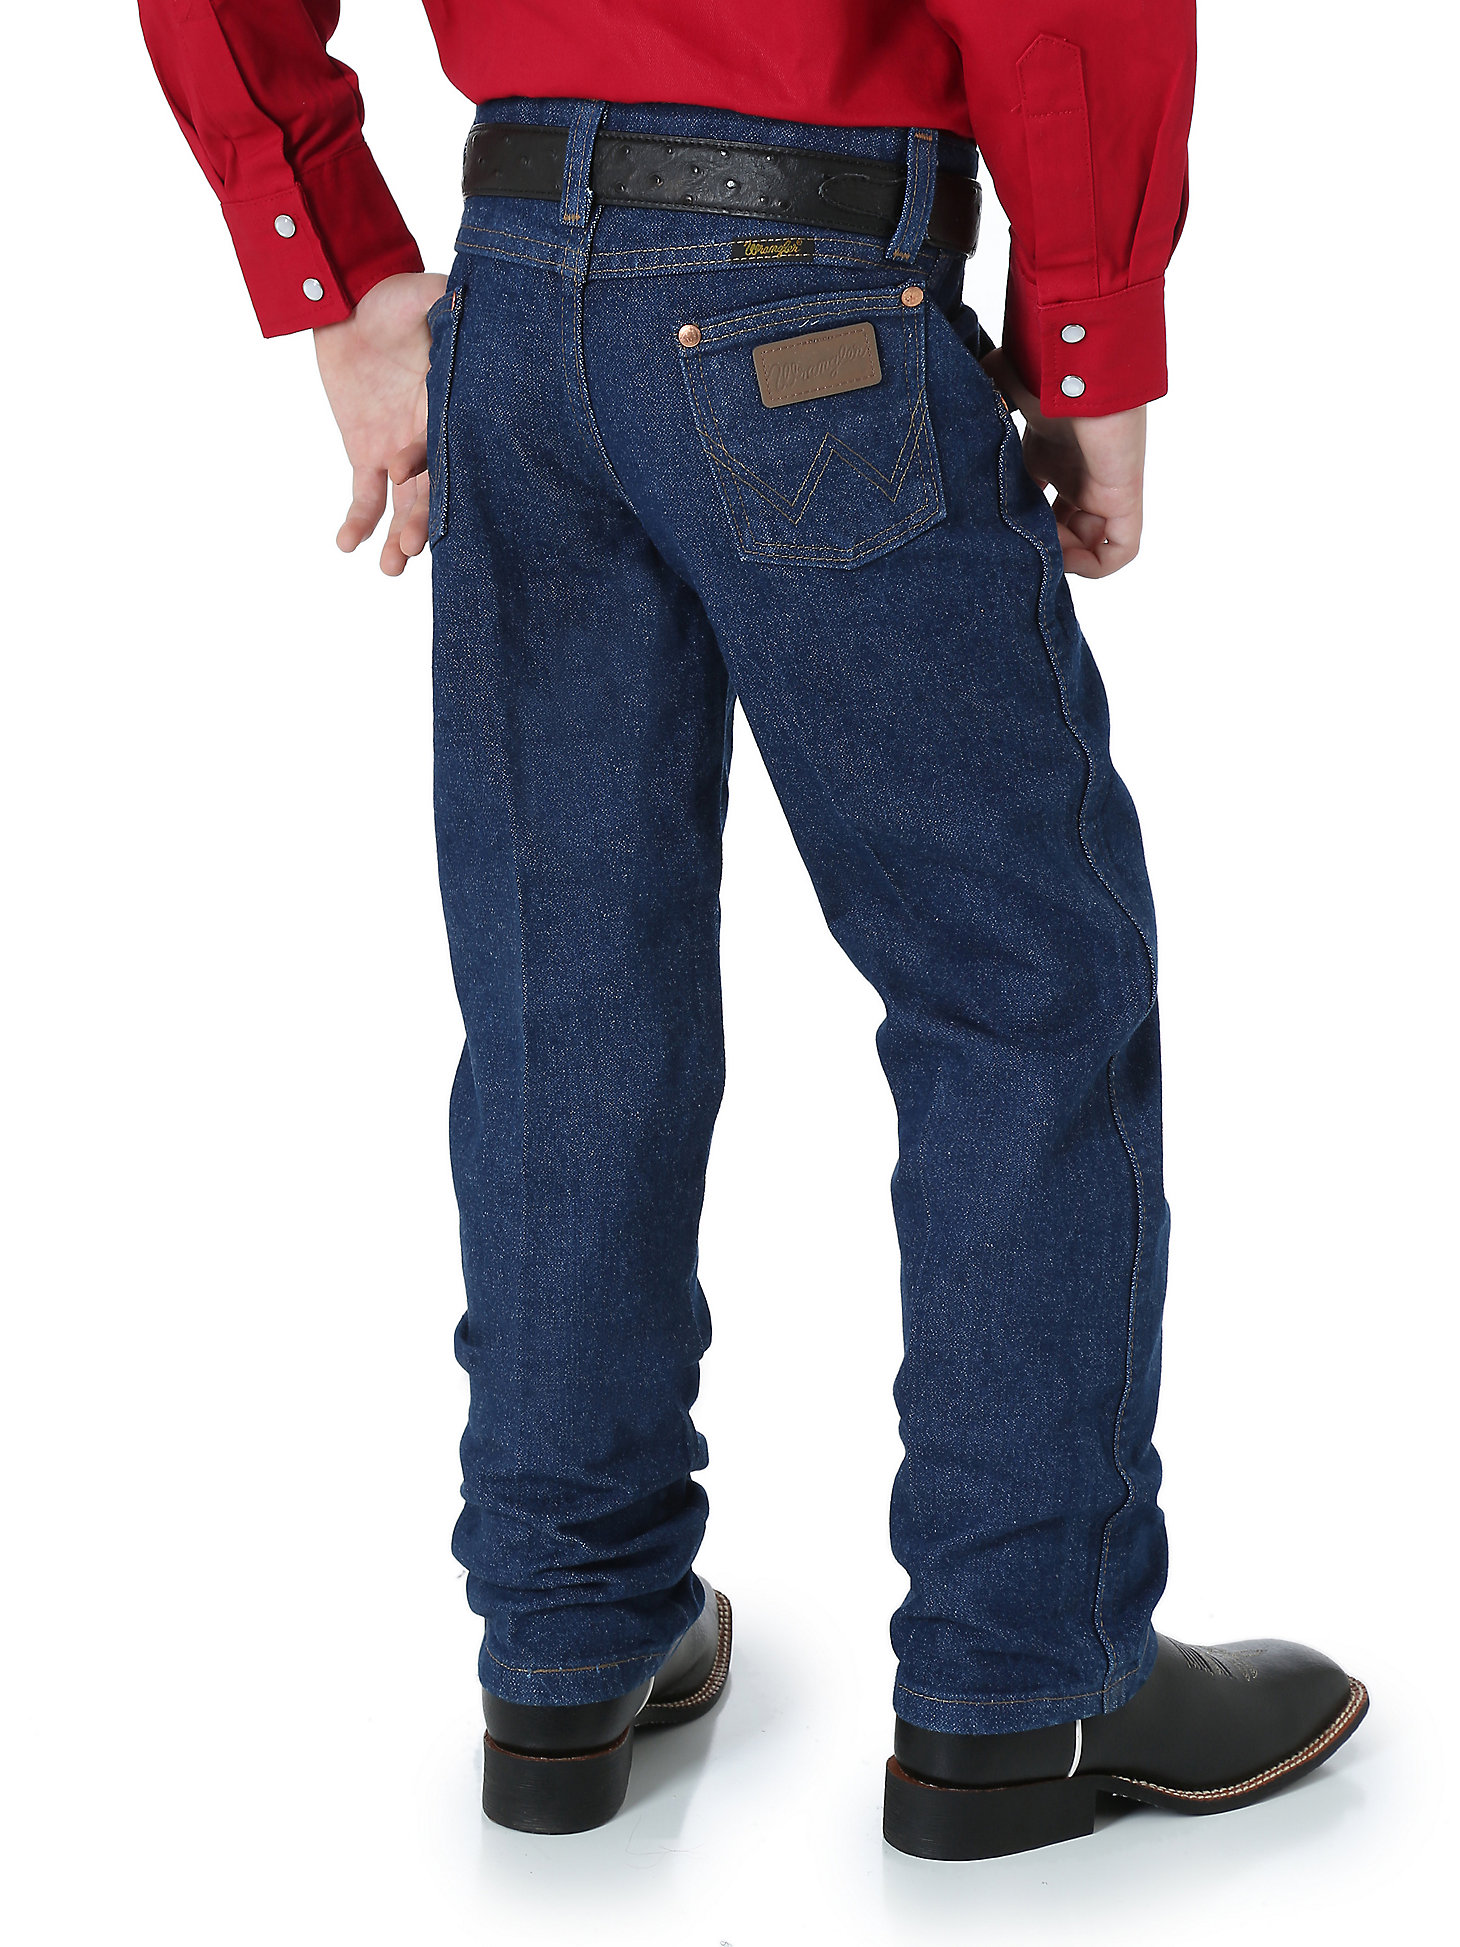 Wrangler Baby Boys' Five Pocket Jean